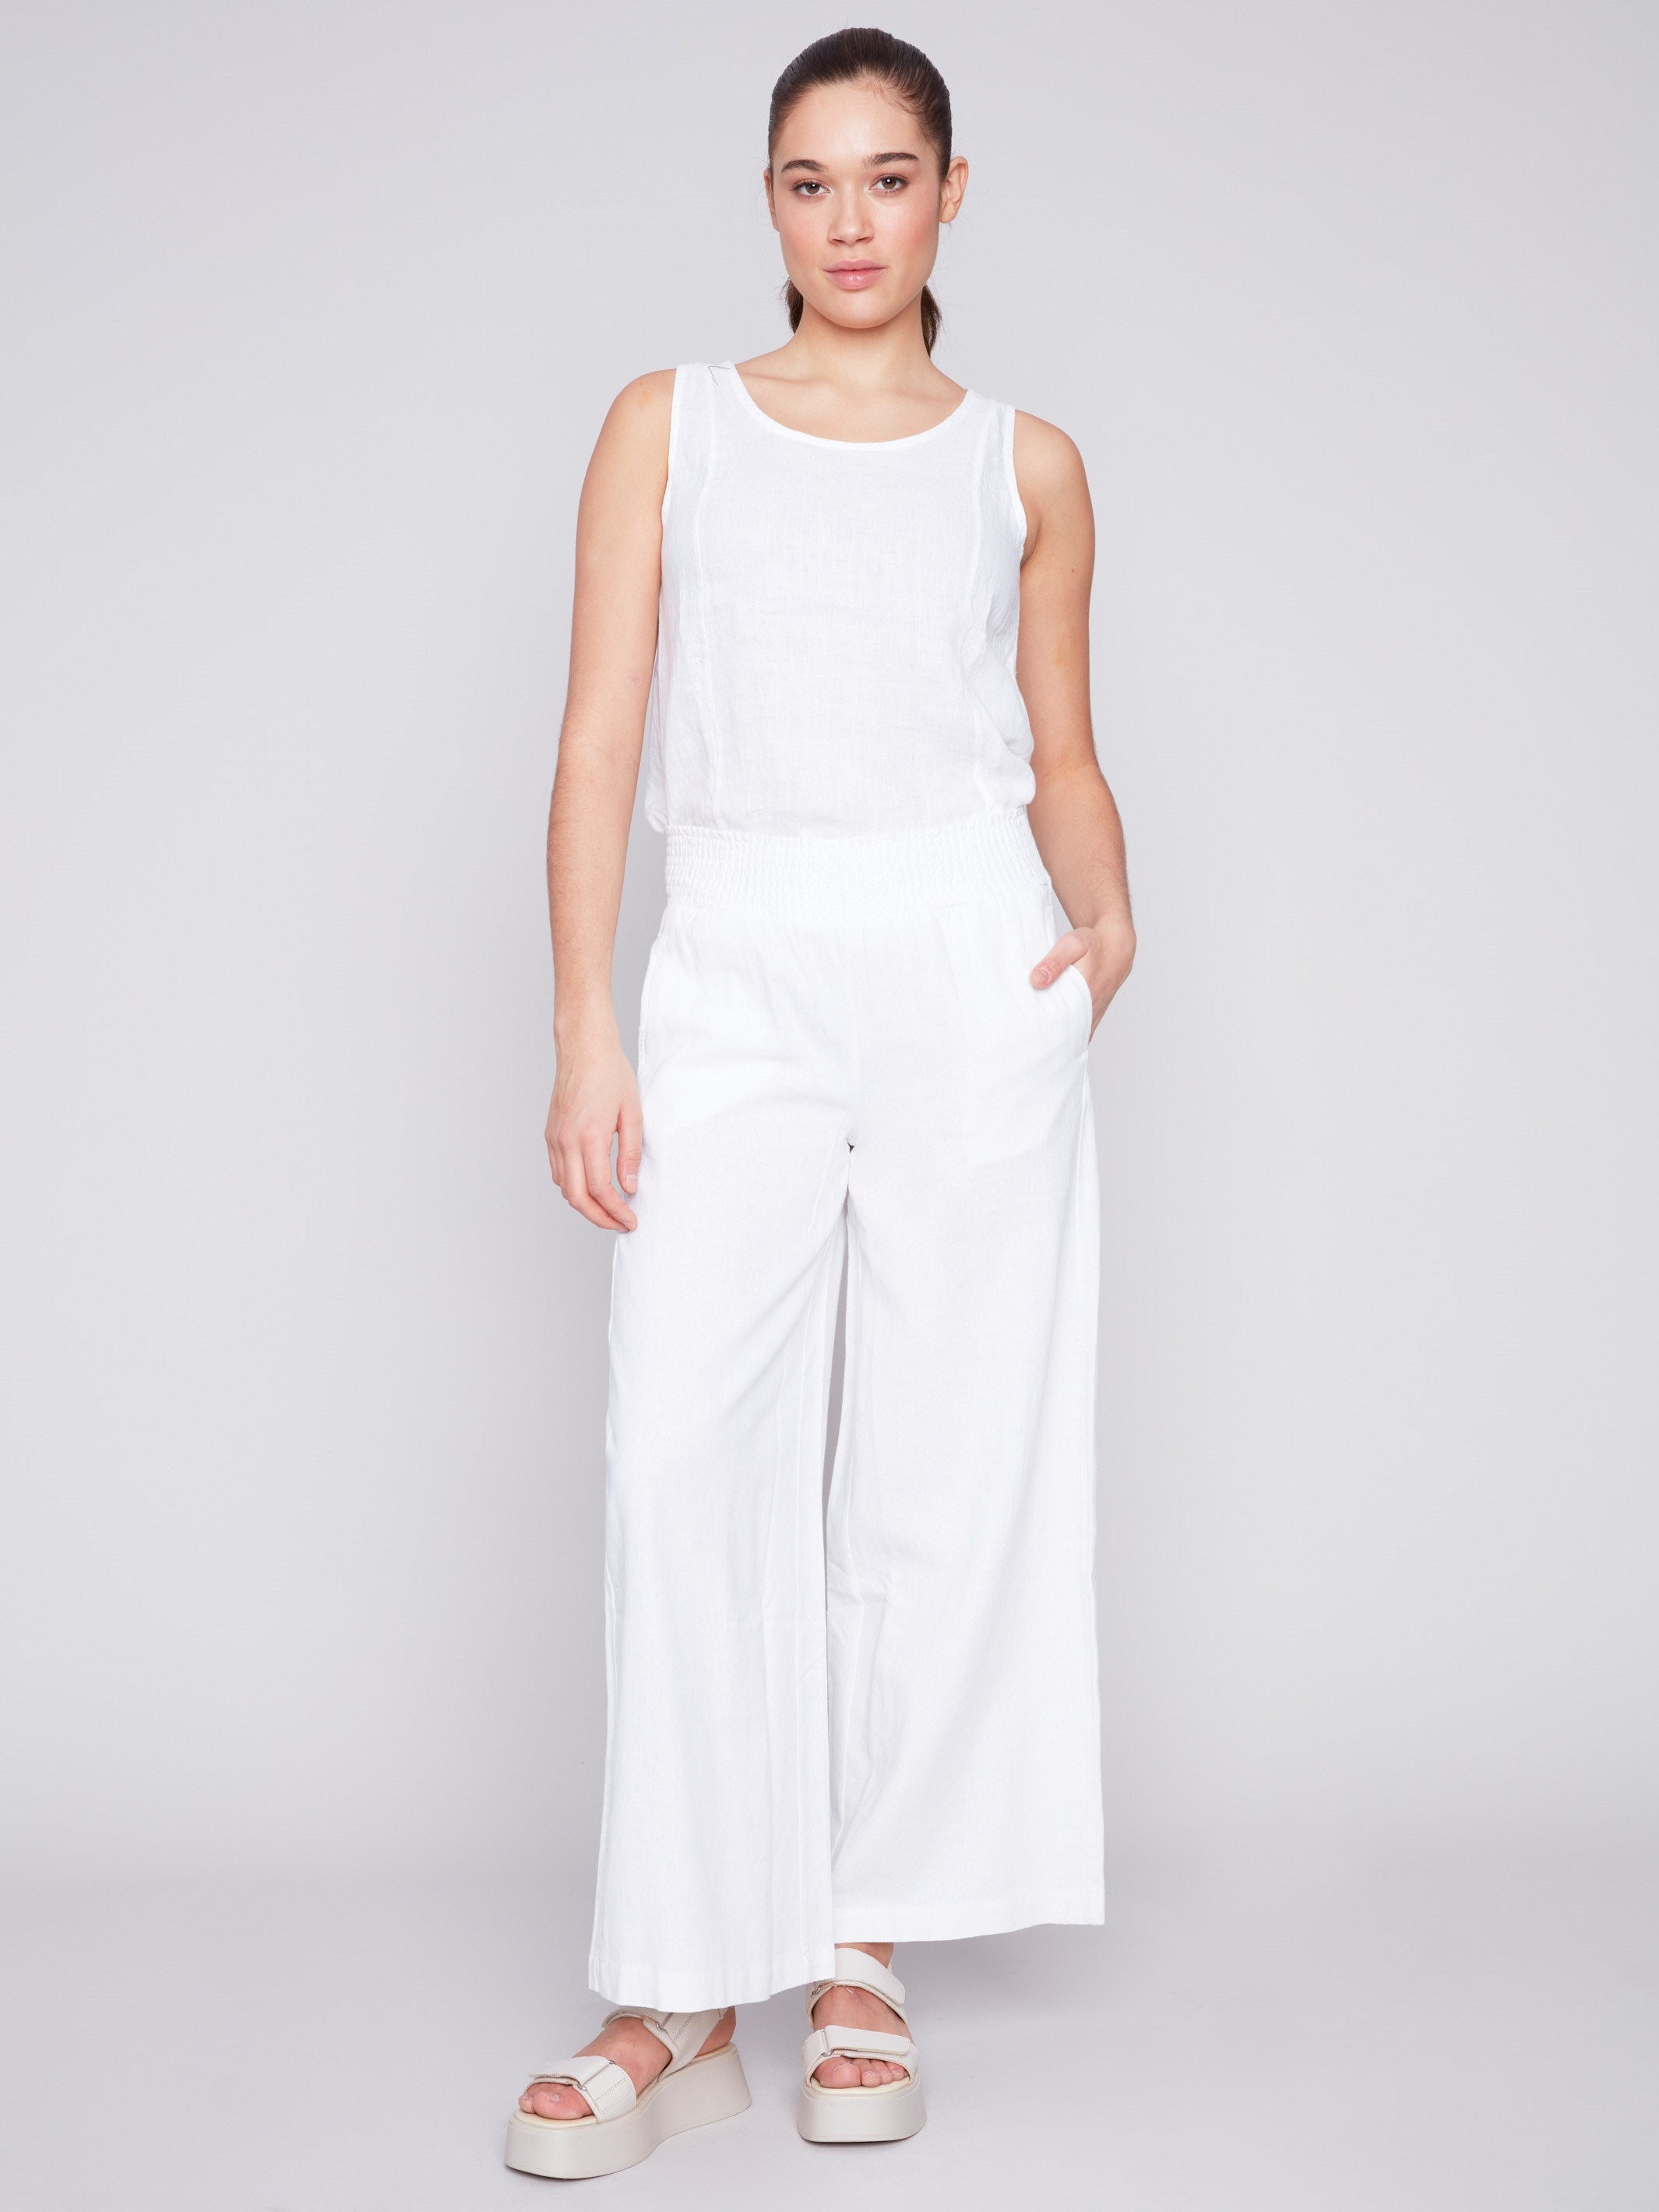 Charlie B Elastic Waist Linen-Blend Pull-On Pants - White - Image 1